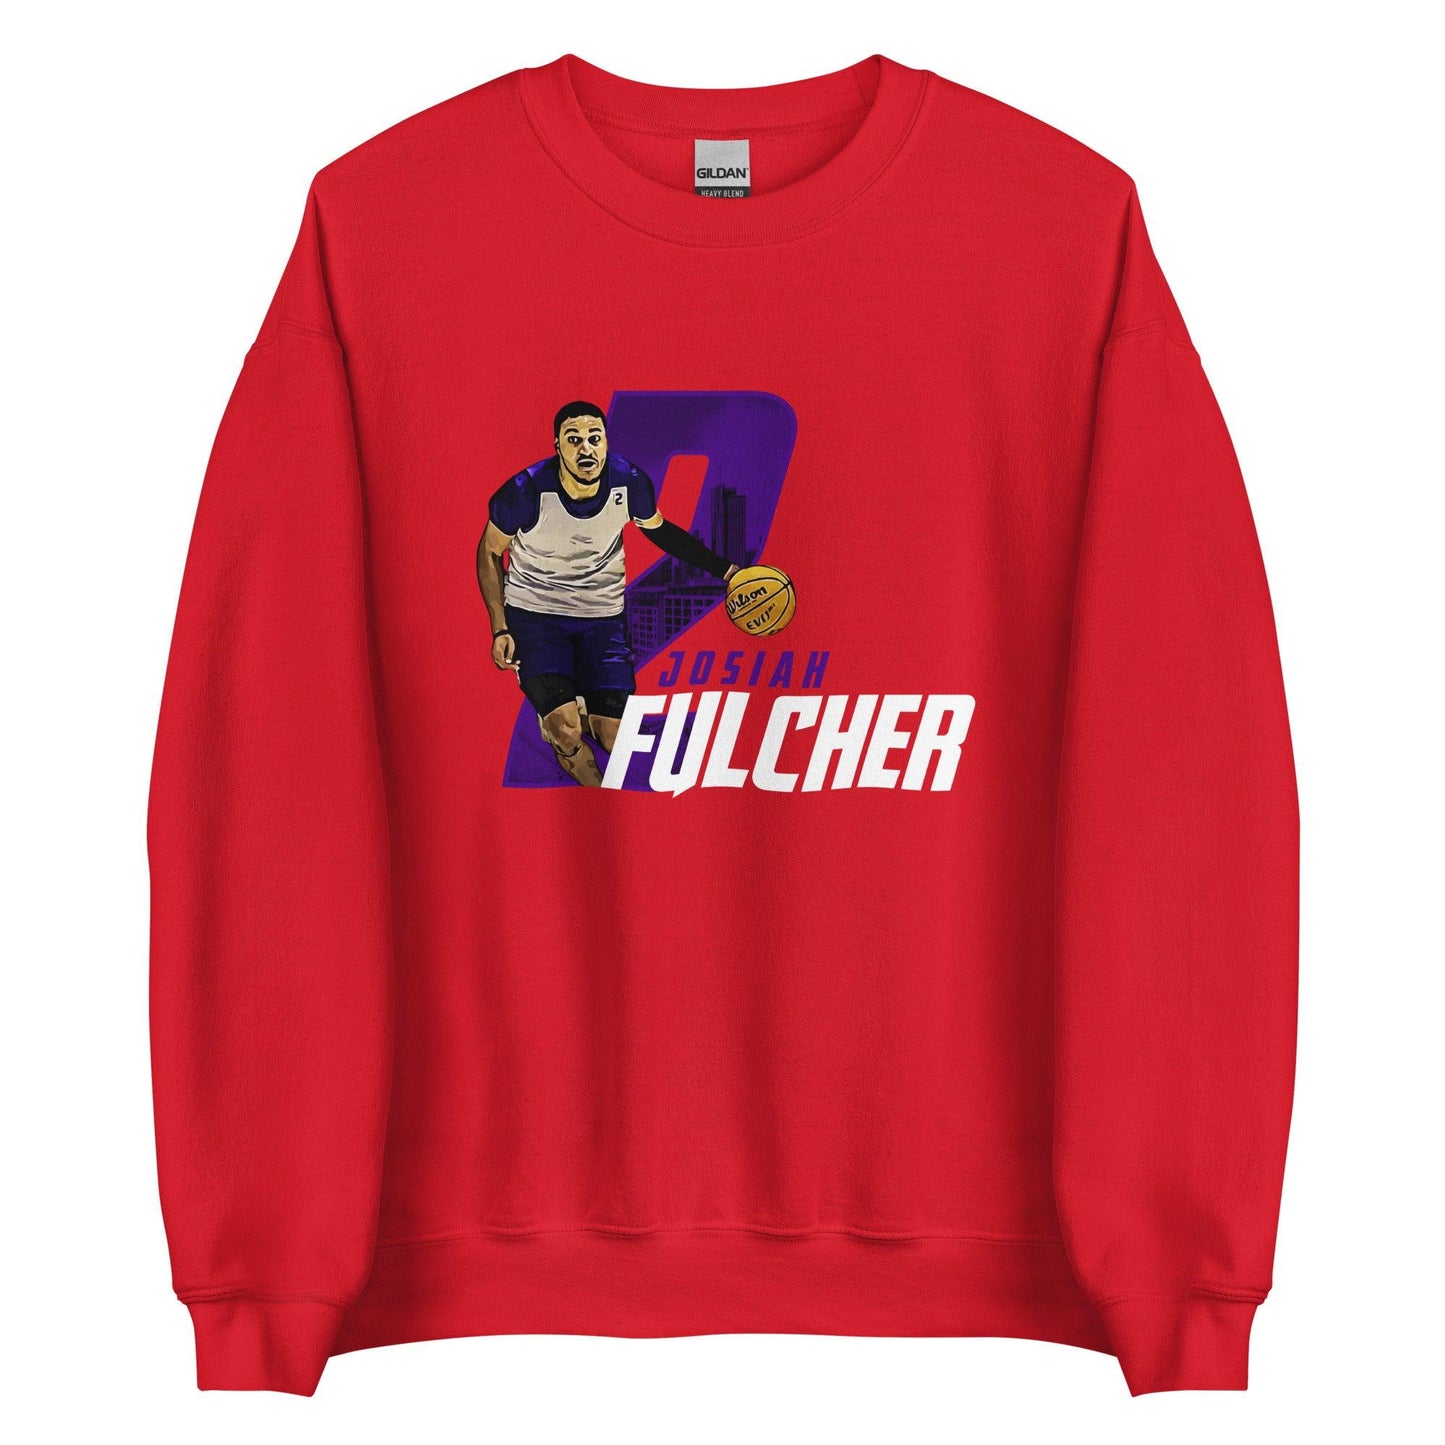 Josiah Fulcher "Gameday" Sweatshirt - Fan Arch